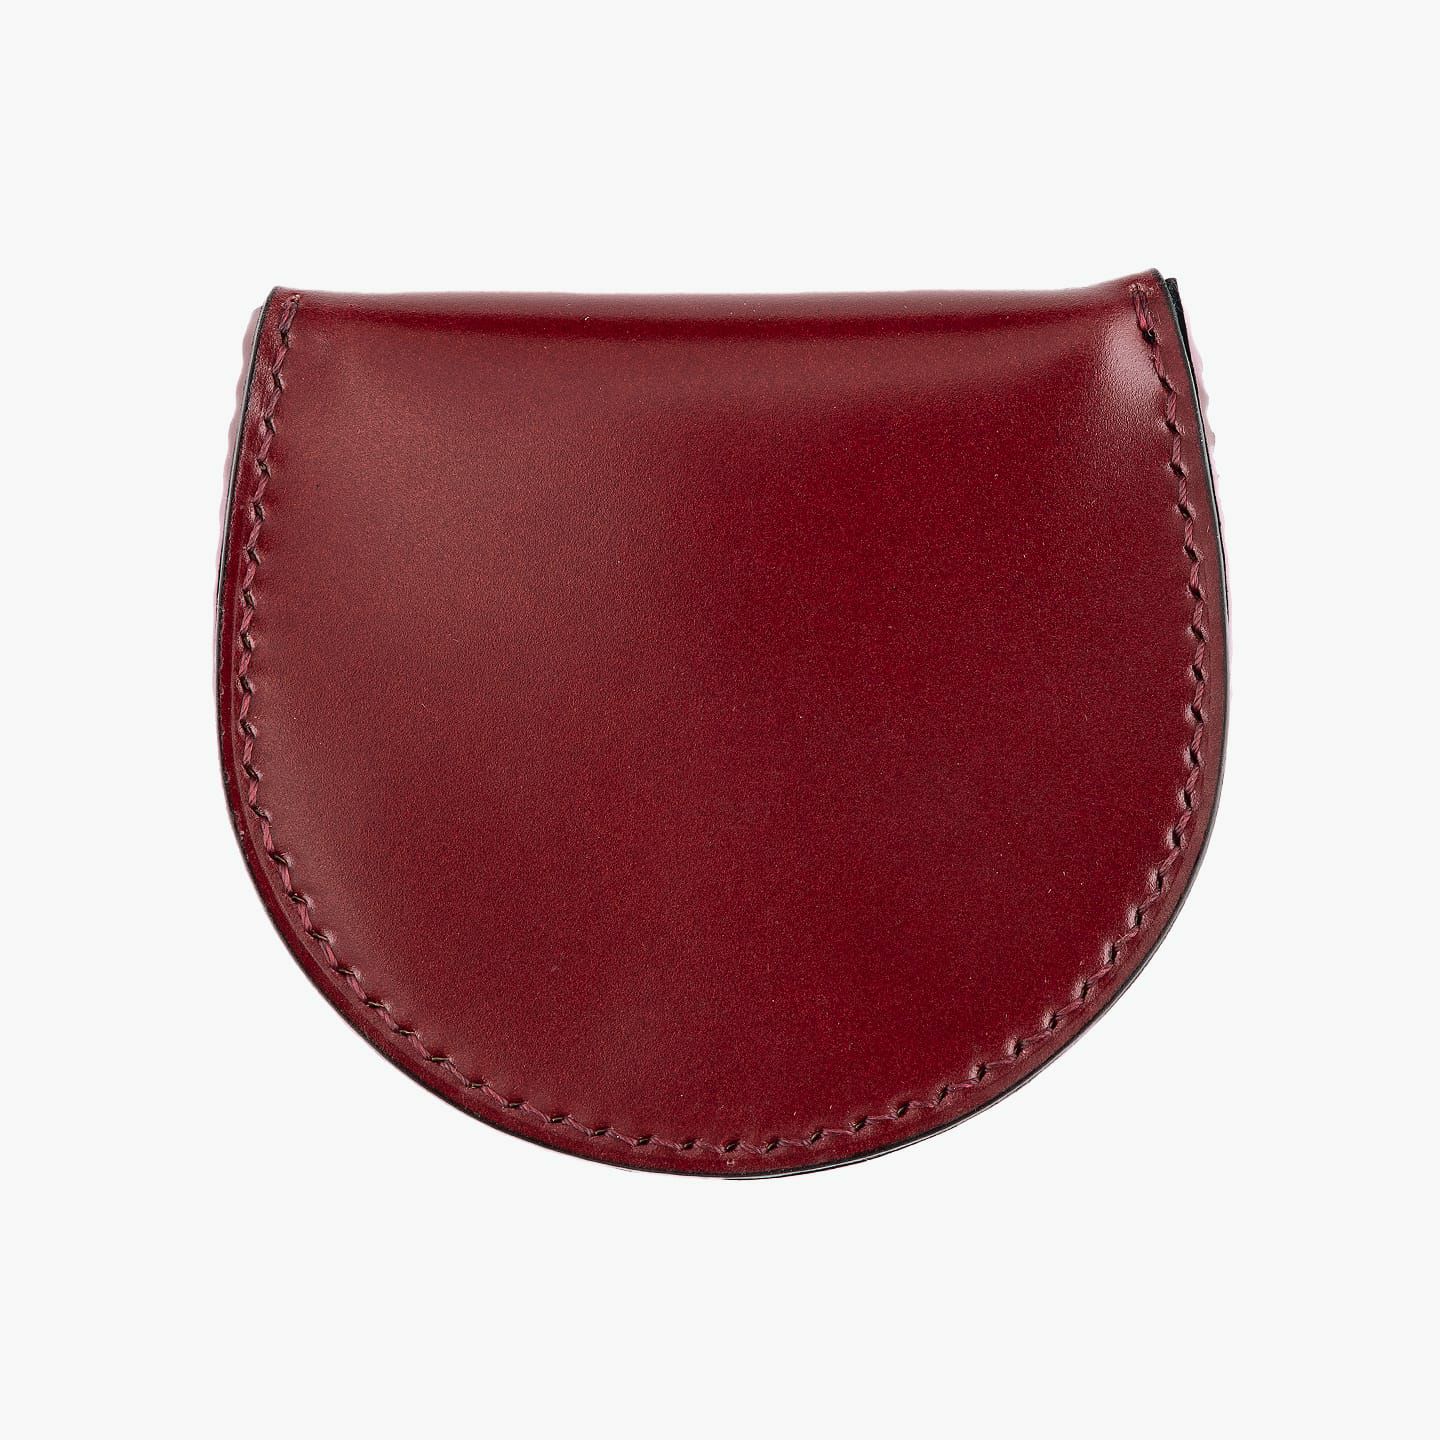 アニリン染めコードバン 馬蹄型コインケース | 大人のバッグ・財布 